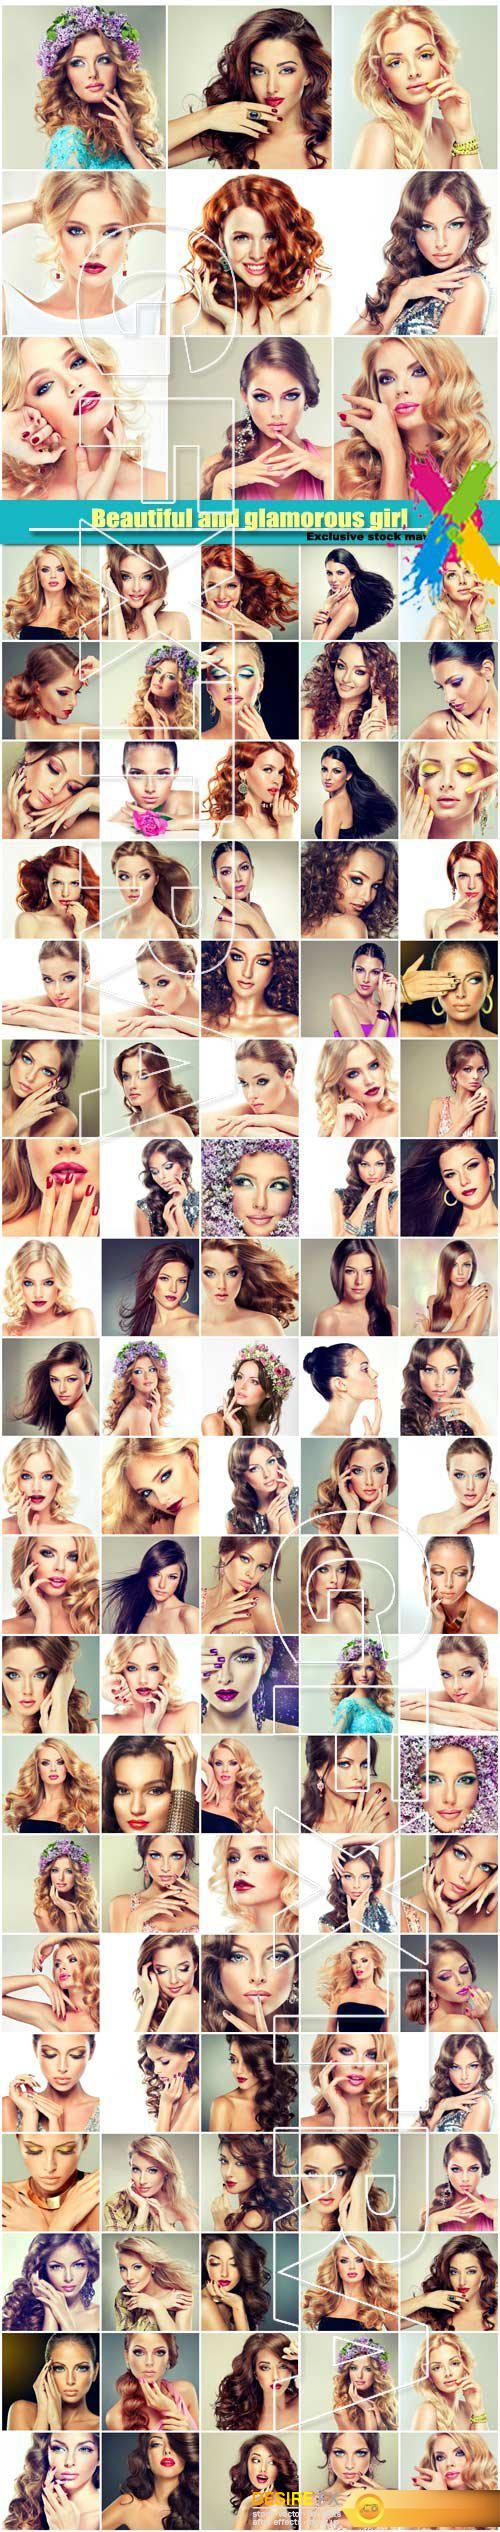 Beautiful girls, trendy, stylish and glamorous women